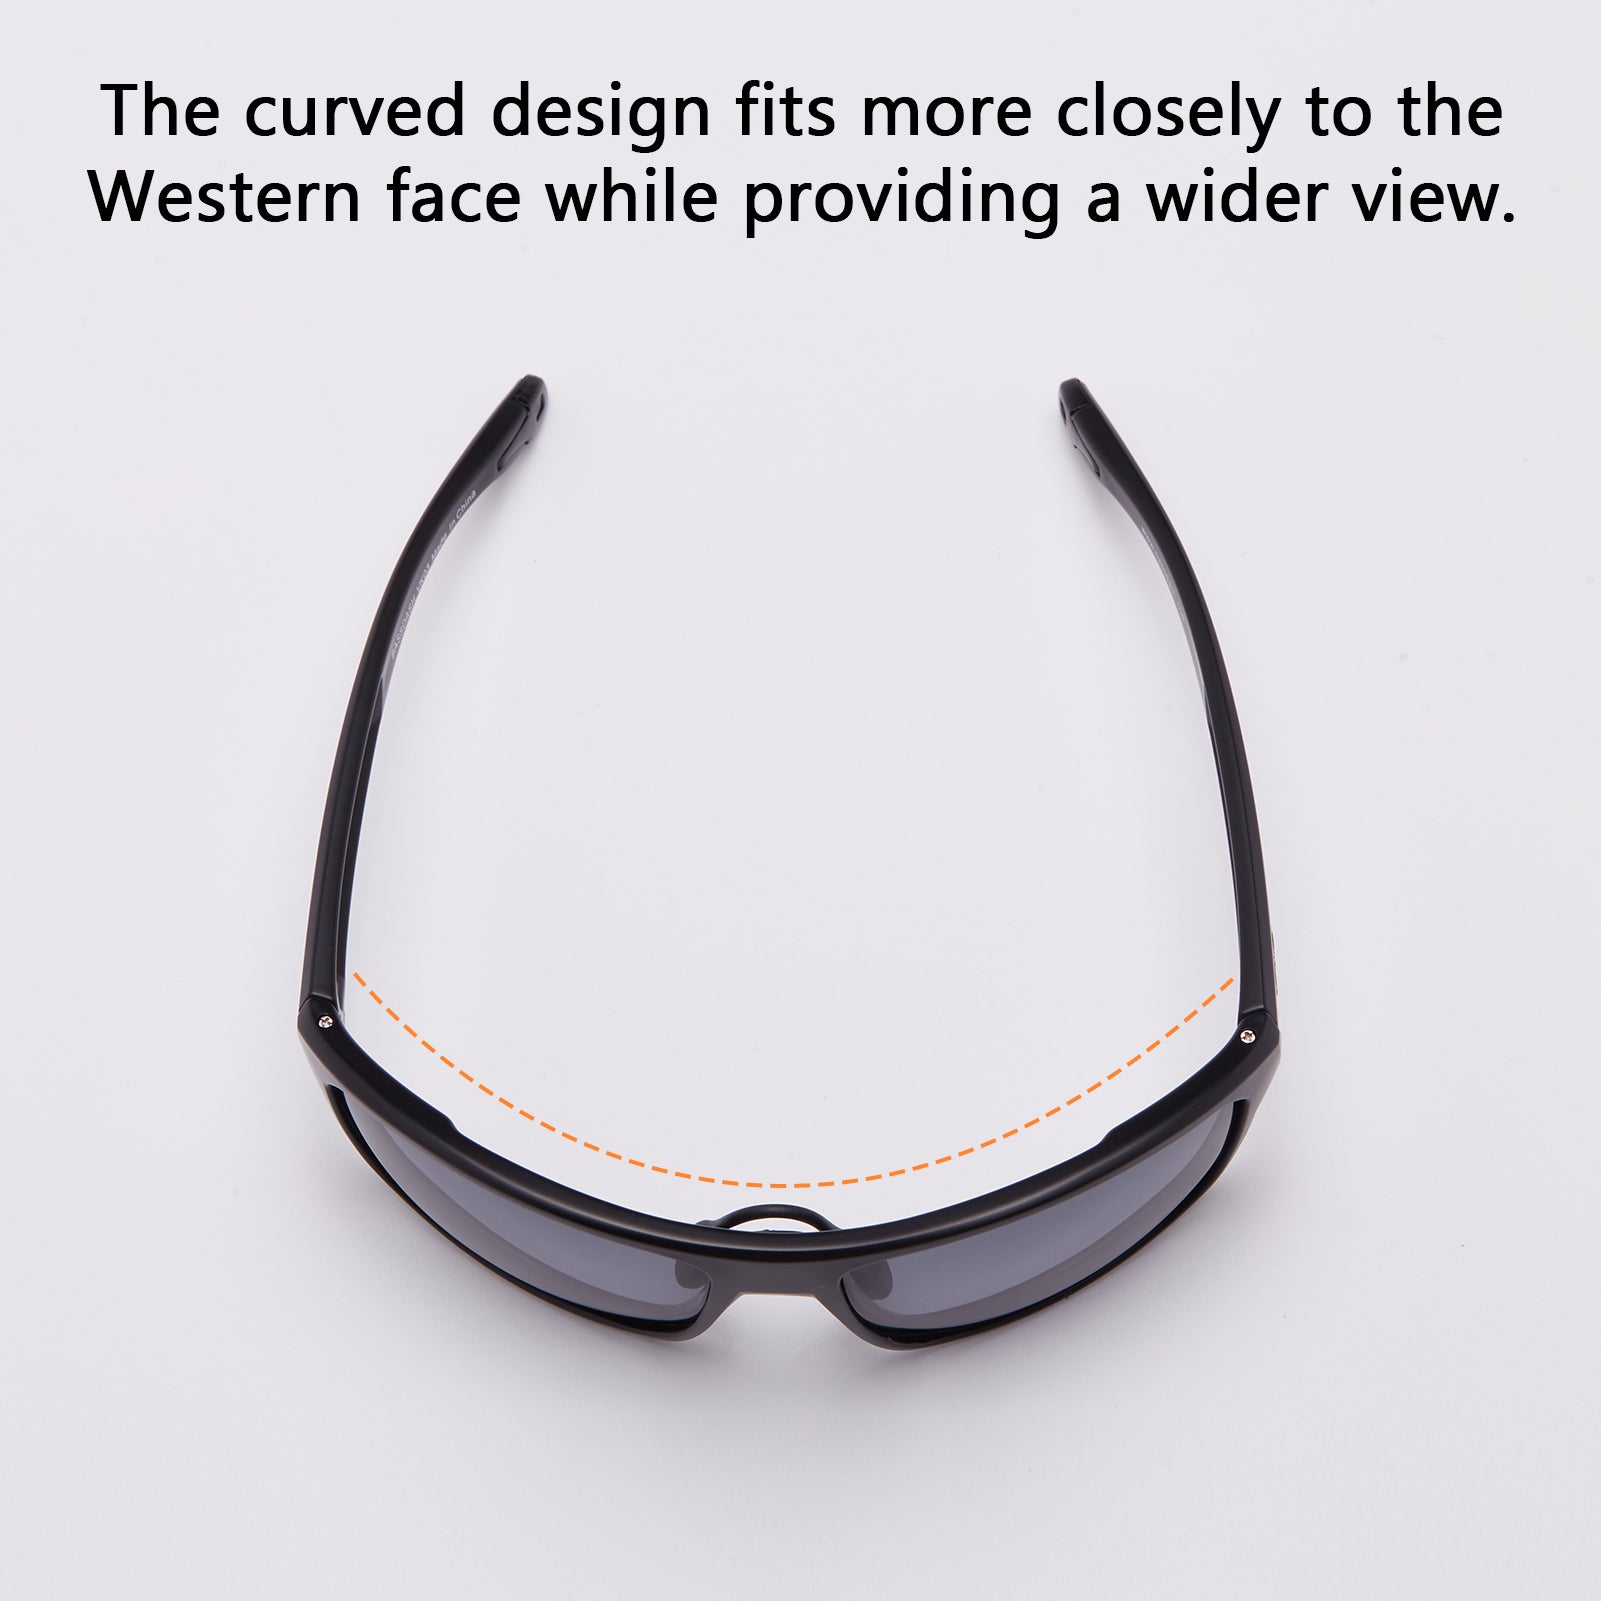 Polarized Fishing Sunglasses for Men Women | Bassdash Fishing Frame - Matte Black & Lens - Ice Blue Mirror